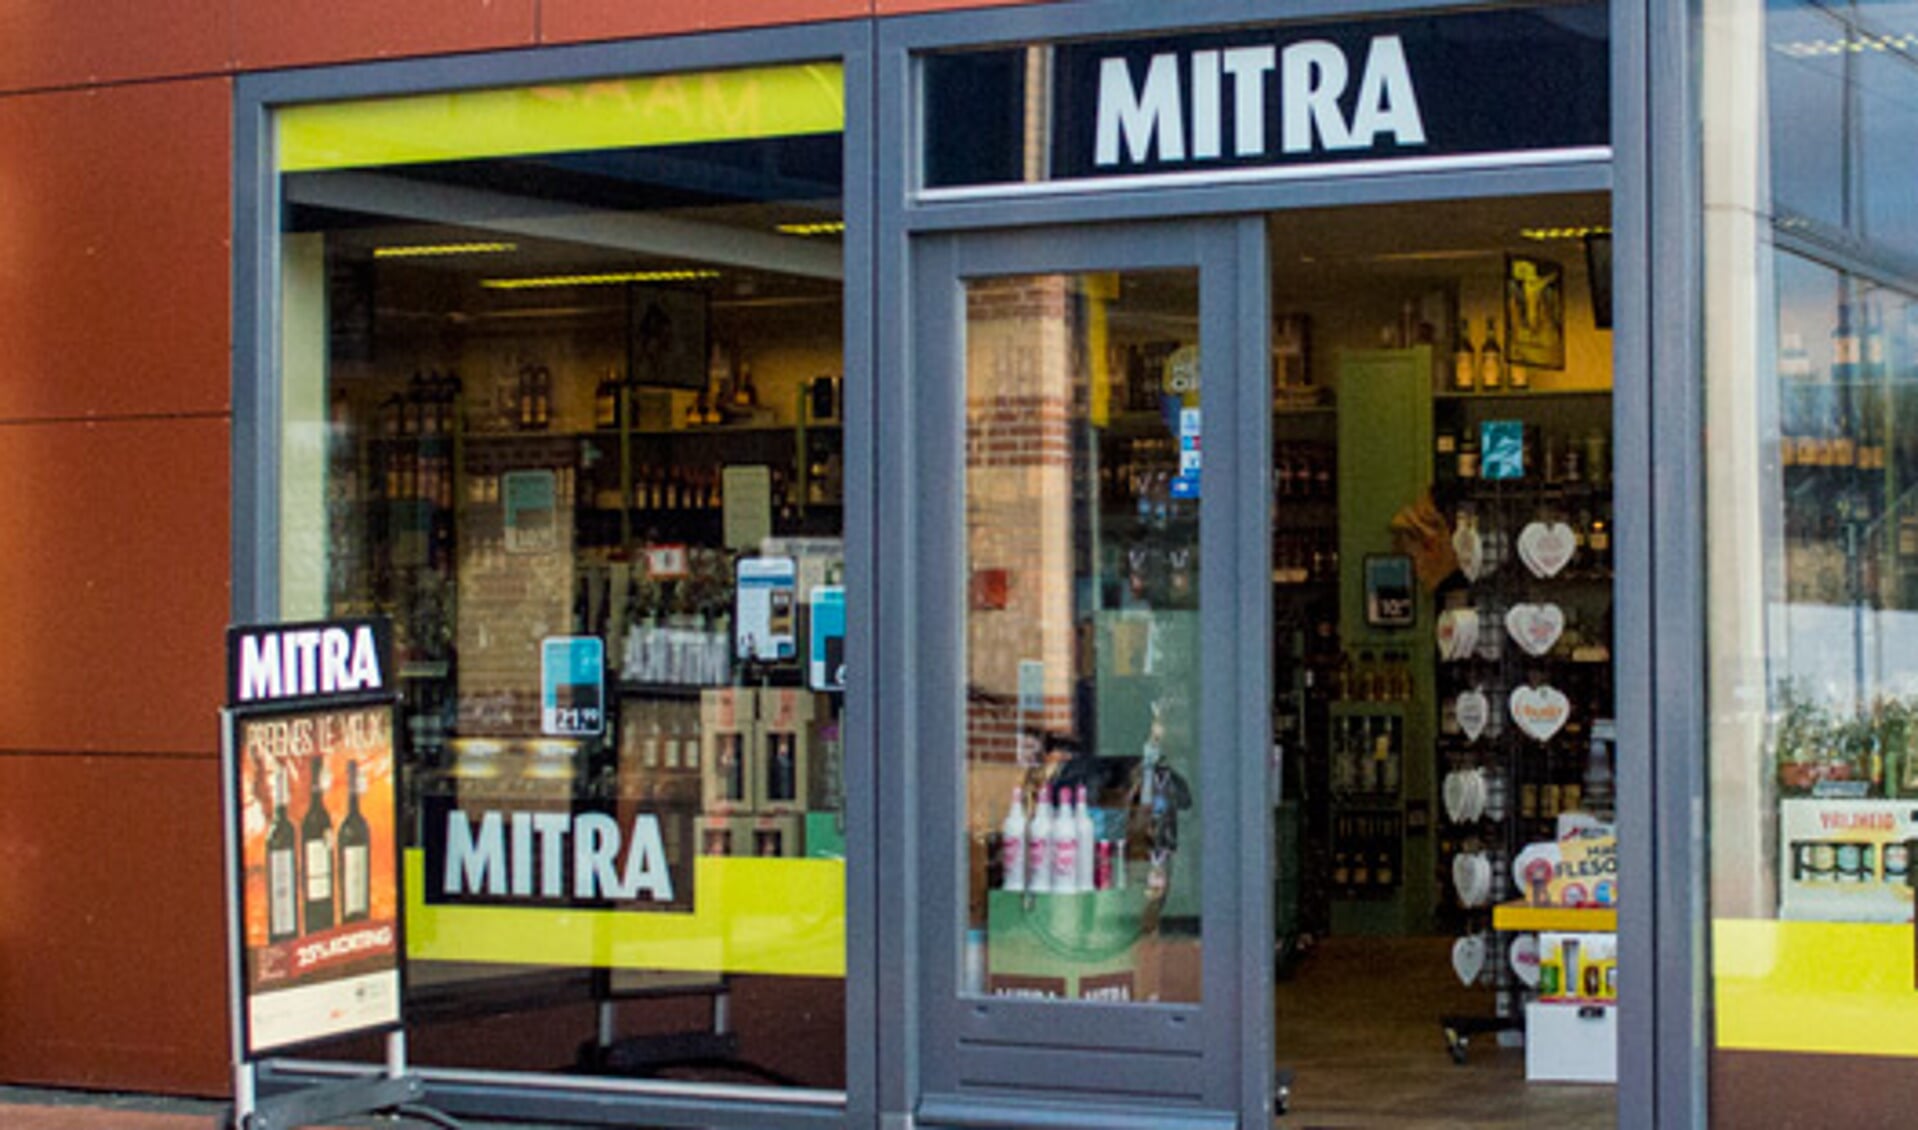 De Mitra in Maaswijk is gewoon open, net als die op Vlinderveen.